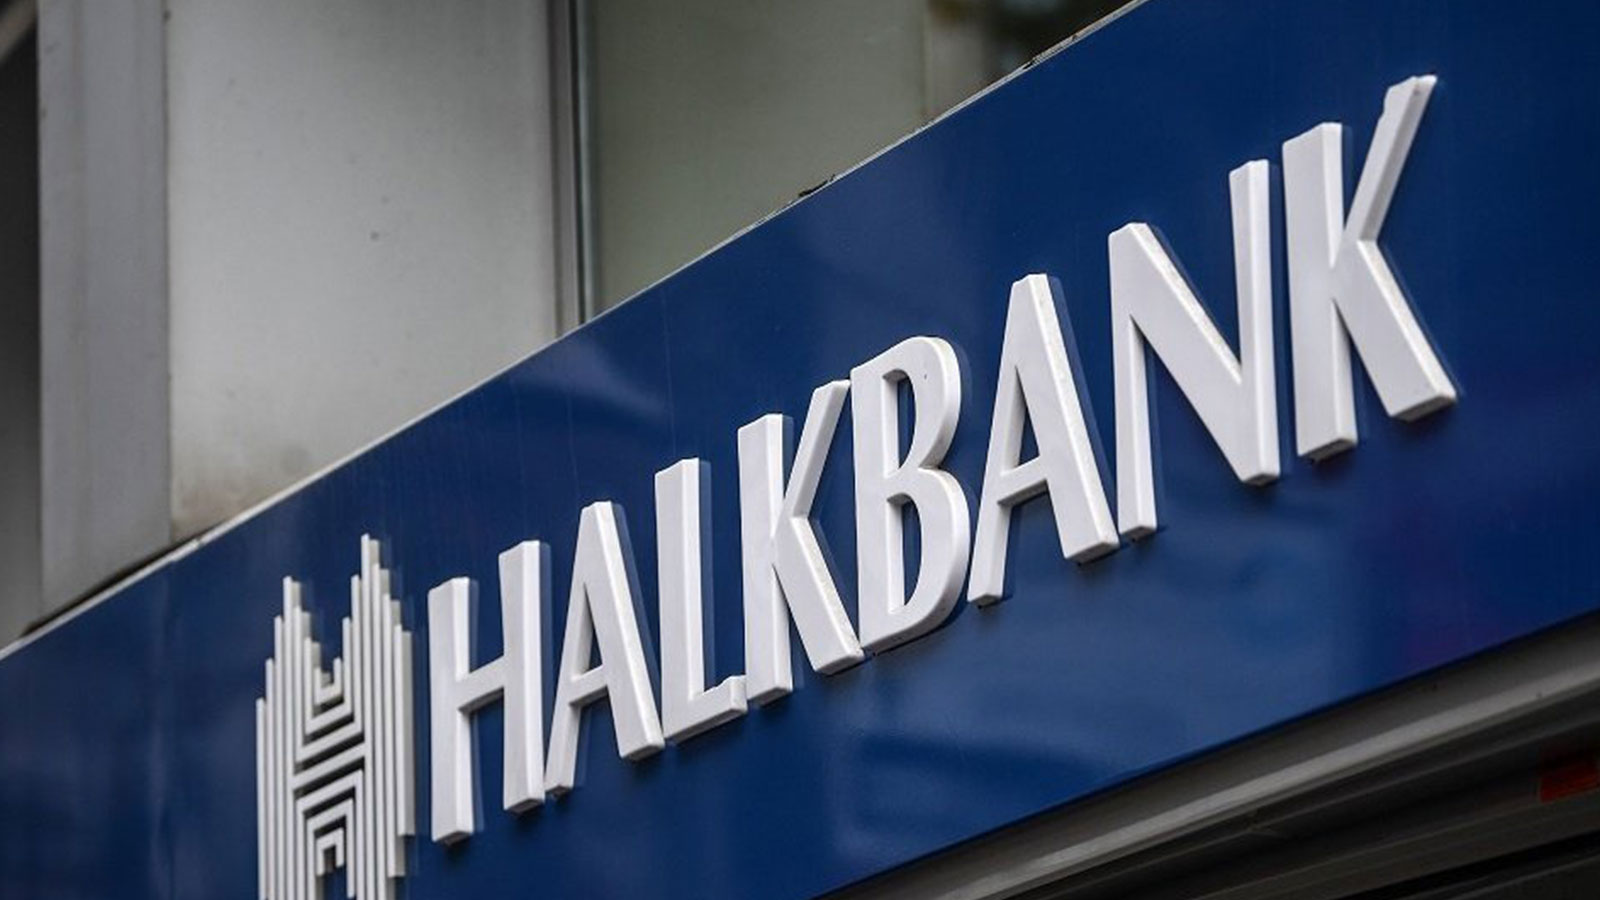 Halkbank Emekliye Maaşın 33 Katı İhtiyaç Kredisi Başlattı! Diğer Bankalardan Düşük Faiz Oranları Olacak